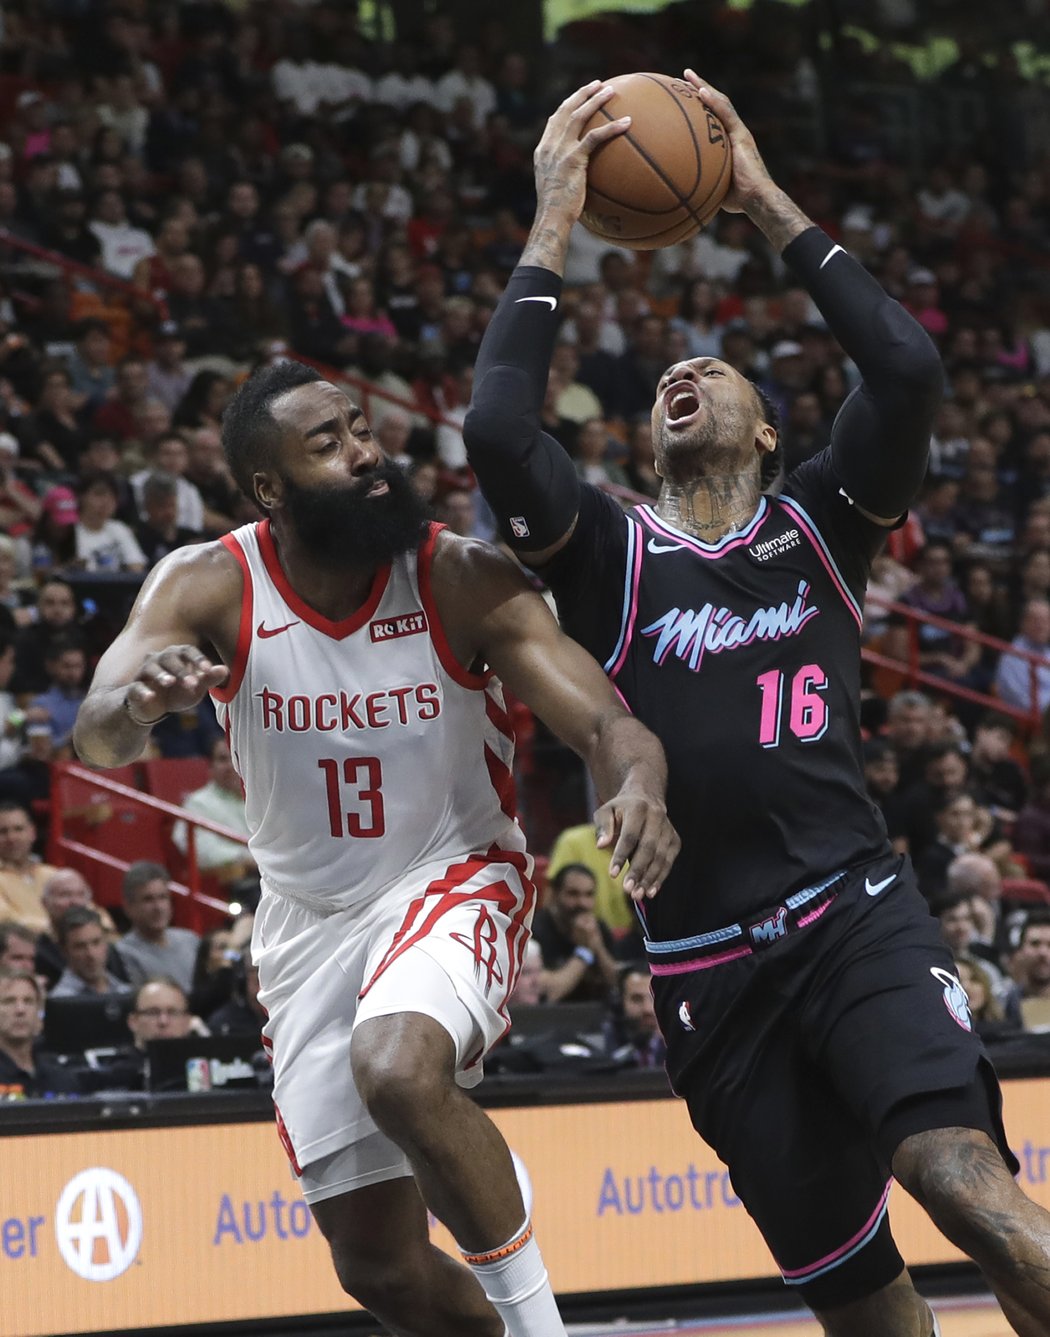 Nejlepší střelec ligy James Harden z Rockets si plní defenzivní povinnosti proti hráči Heat Jamesi Johnsonovi